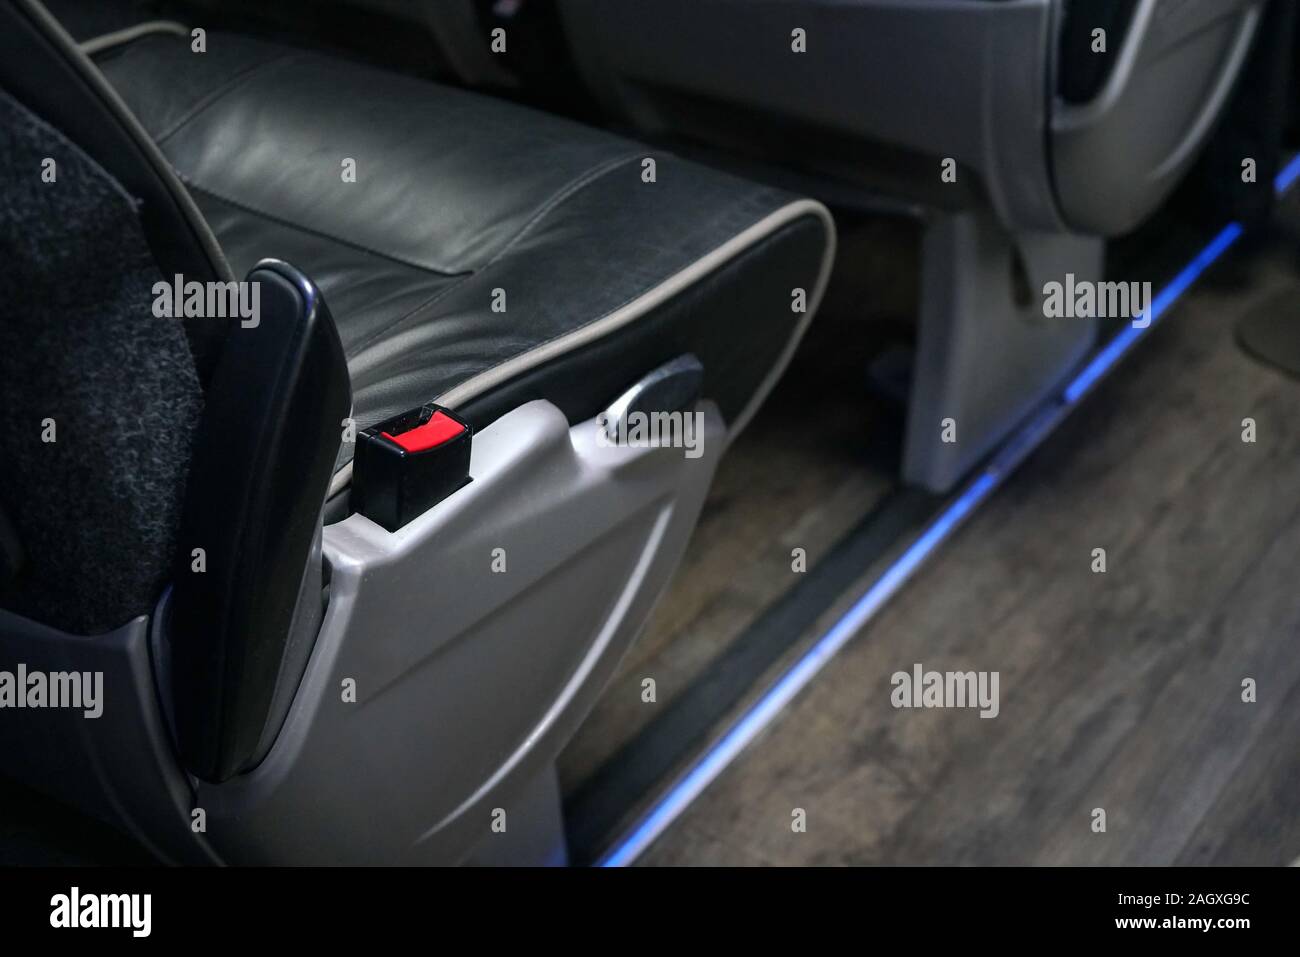 Seat belt bus immagini e fotografie stock ad alta risoluzione - Alamy